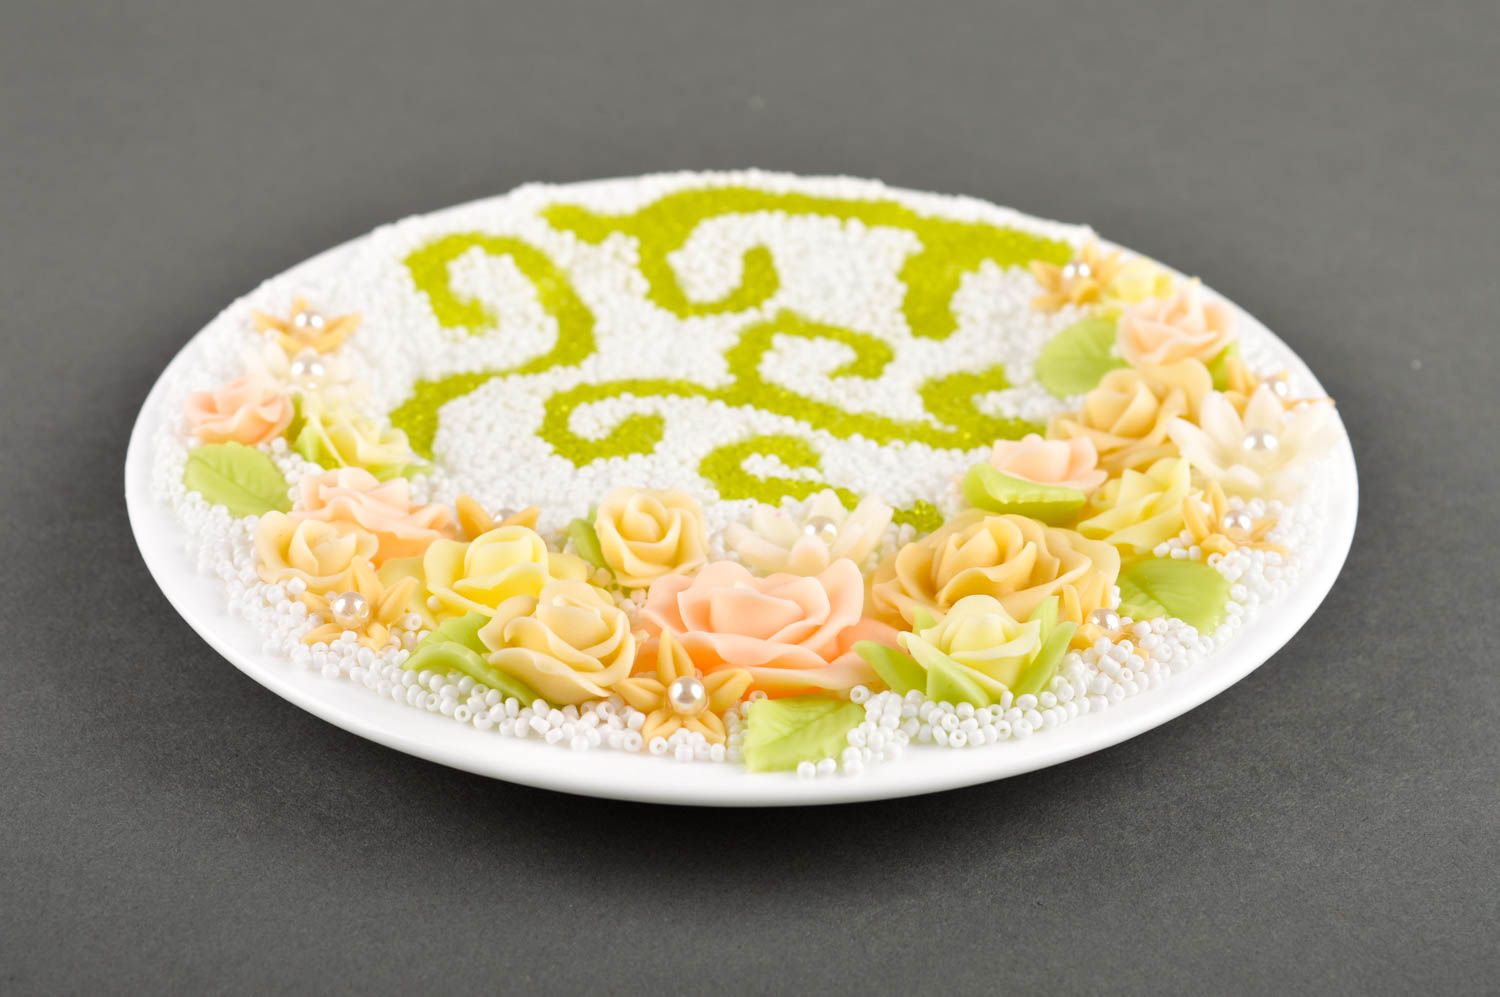 Свадебная тарелка хэнд мэйд посуда на свадьбу красивая посуда авторская тарелка фото 4